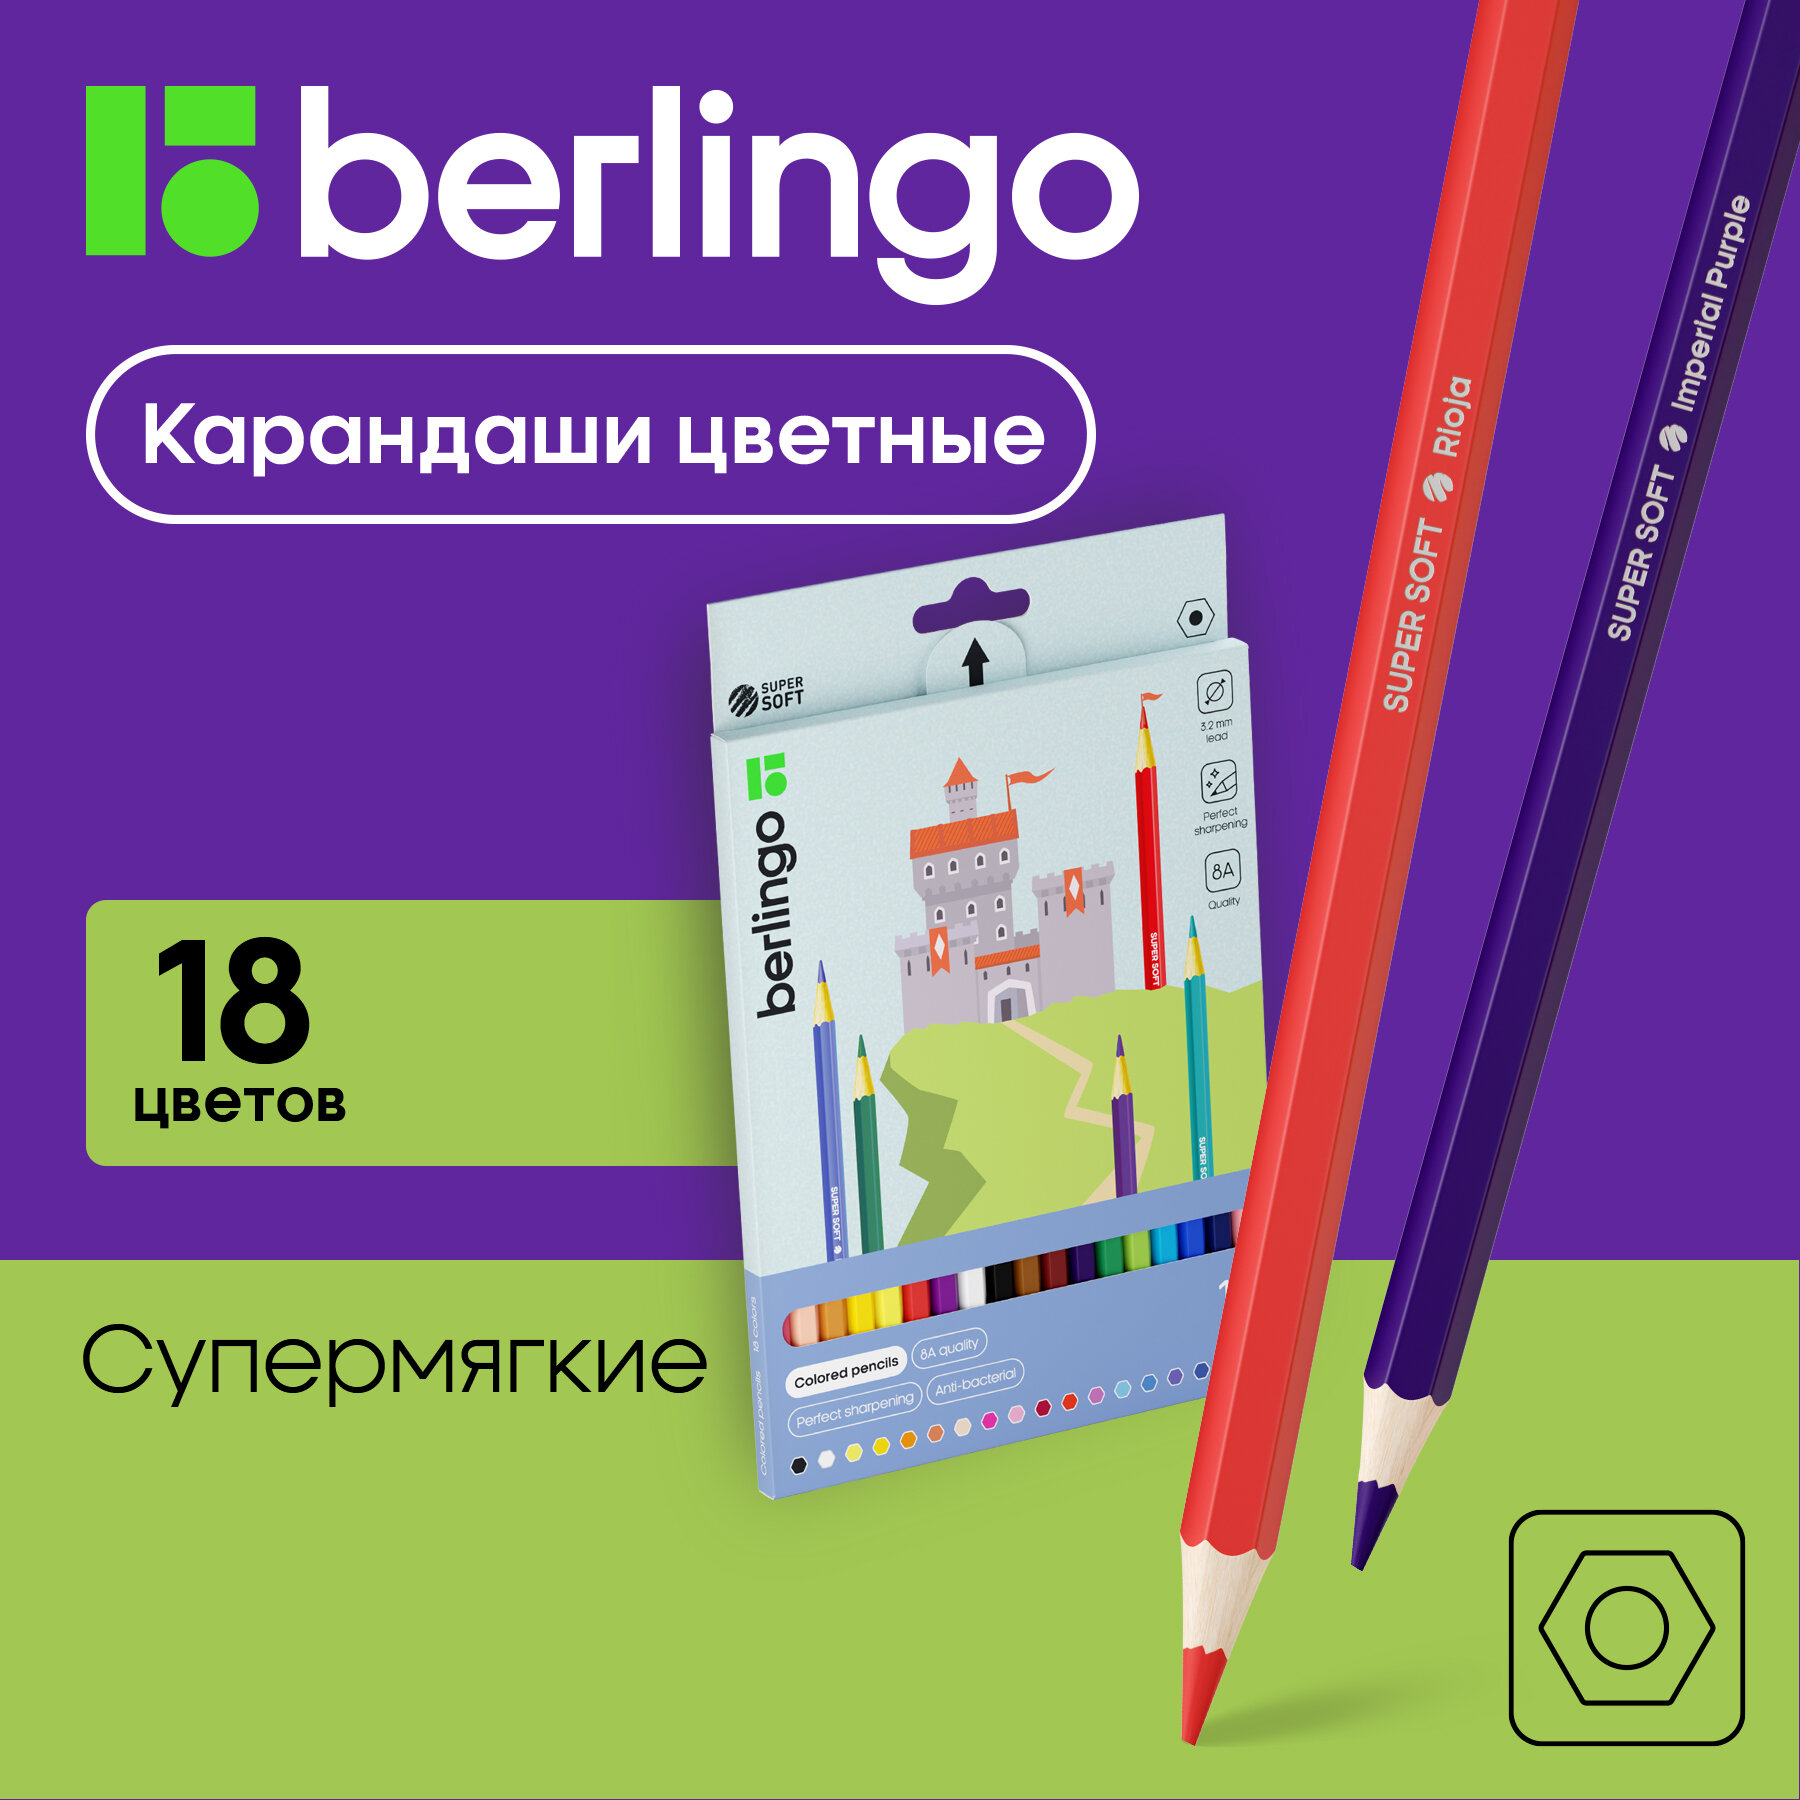 Цветные карандаши для школы 18 цветов, шестигранные / Набор цветных карандашей для рисования школьный Berlingo "SuperSoft. Замки"